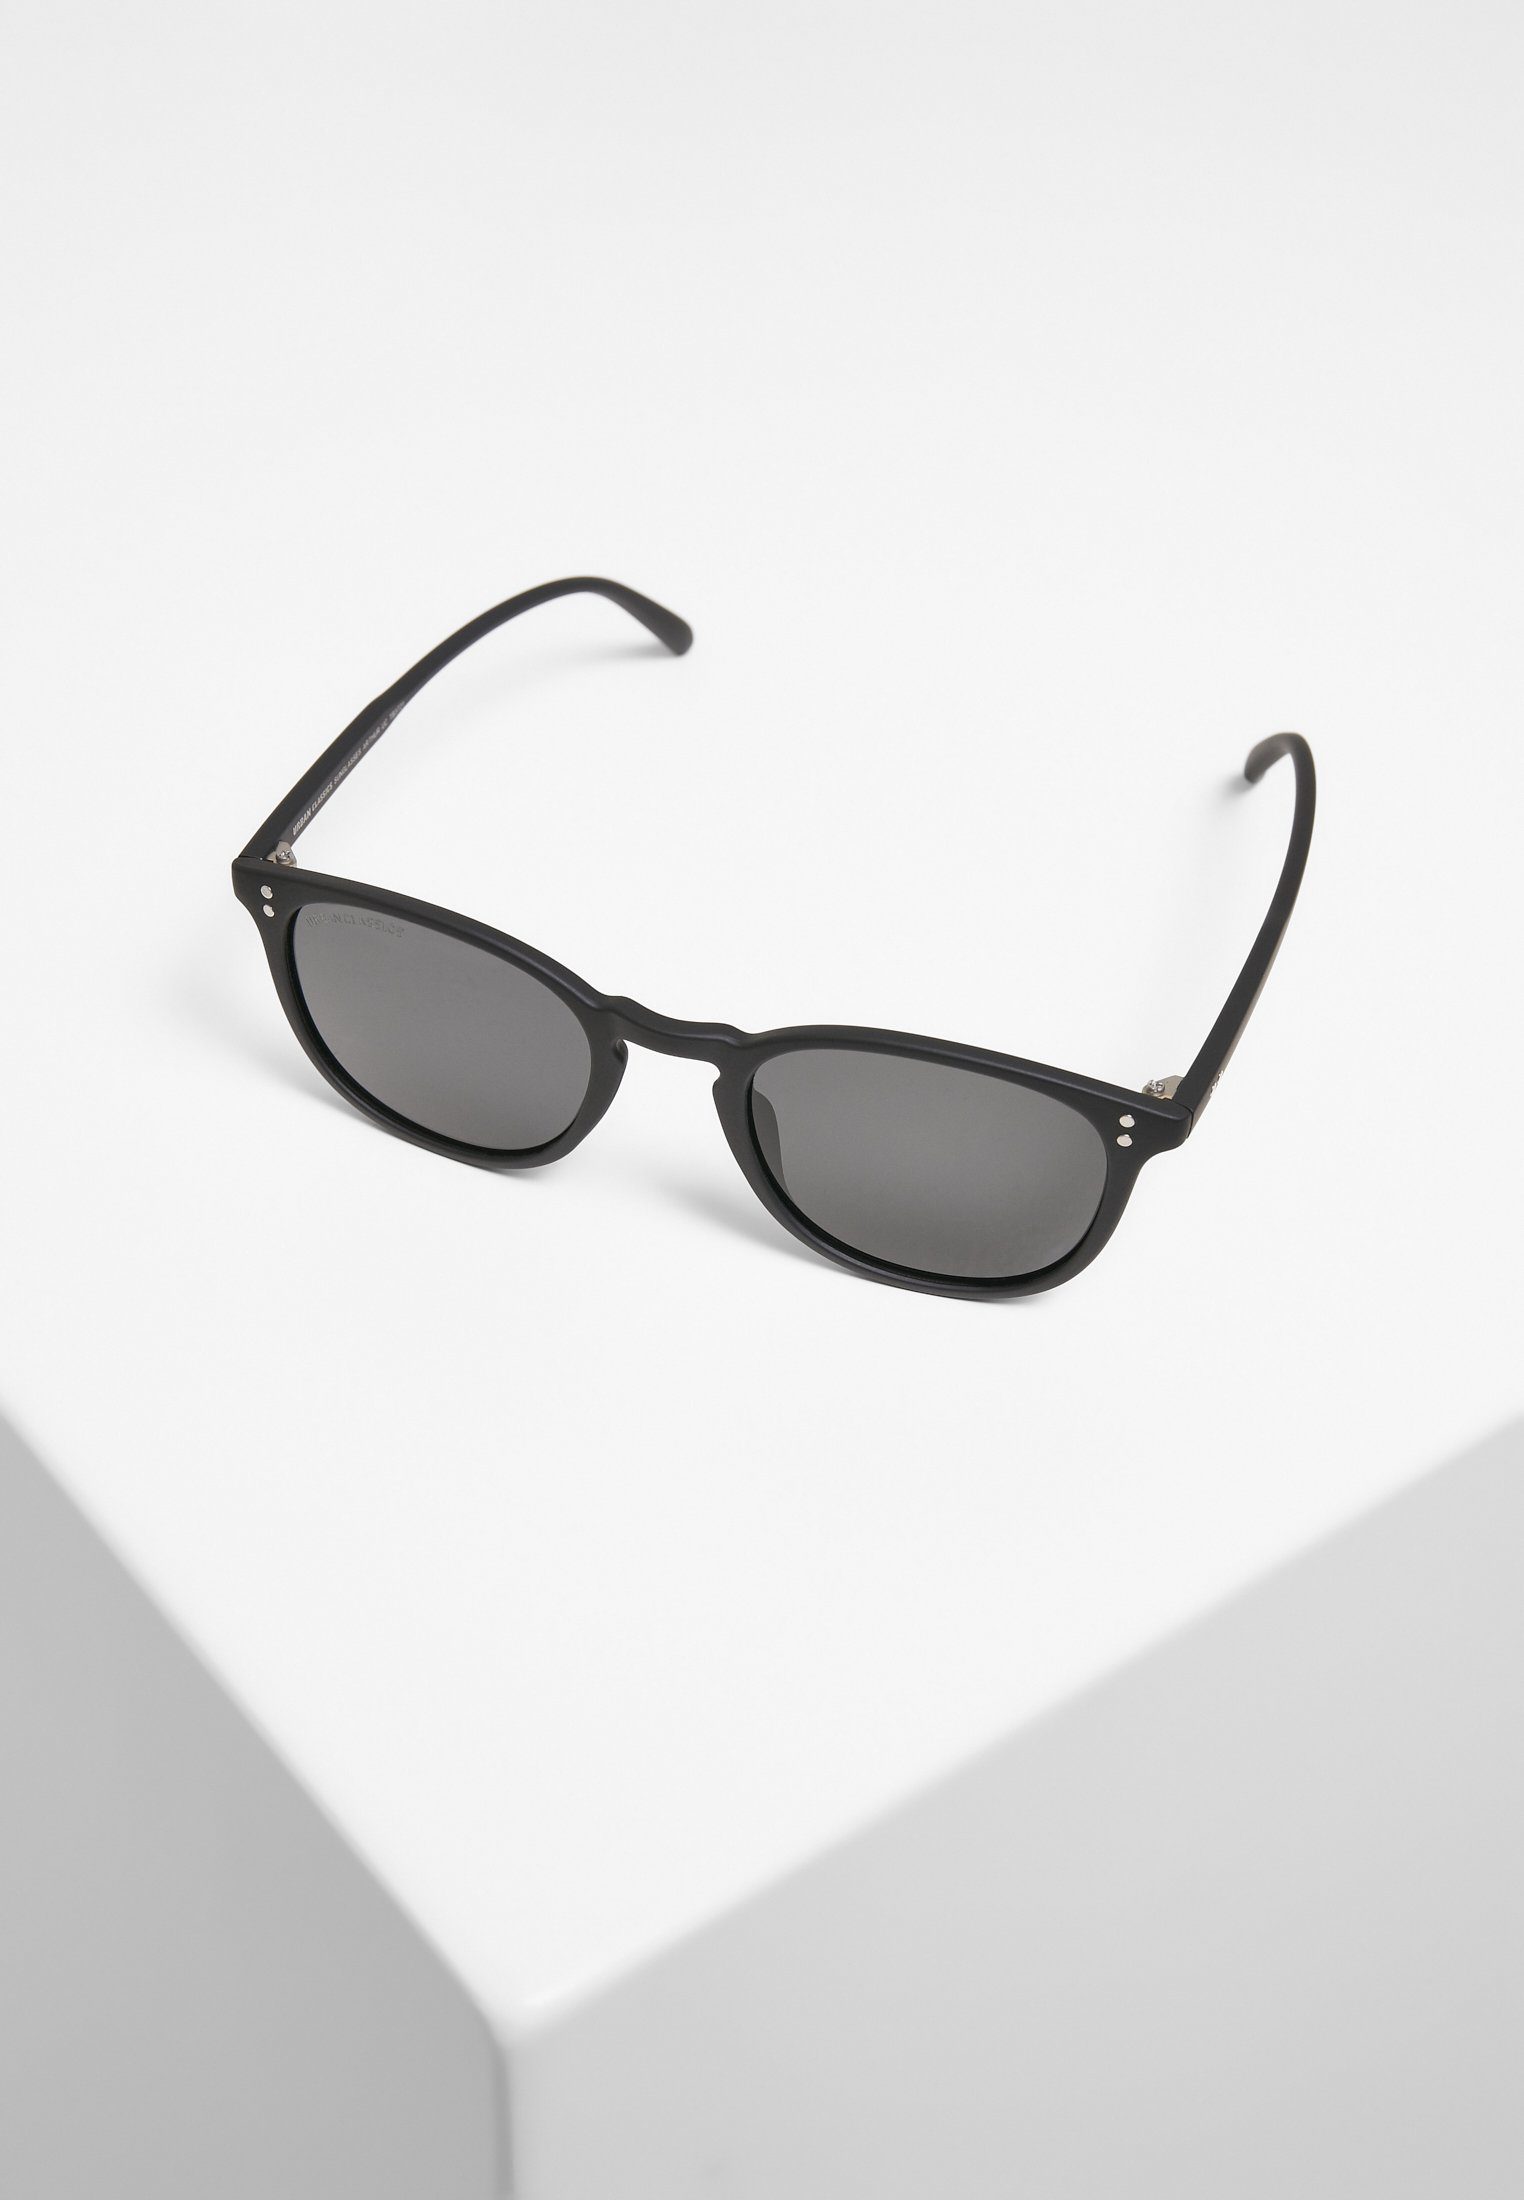 Arthur Sunglasses CLASSICS Sonnenbrille URBAN Accessoires black/grey UC